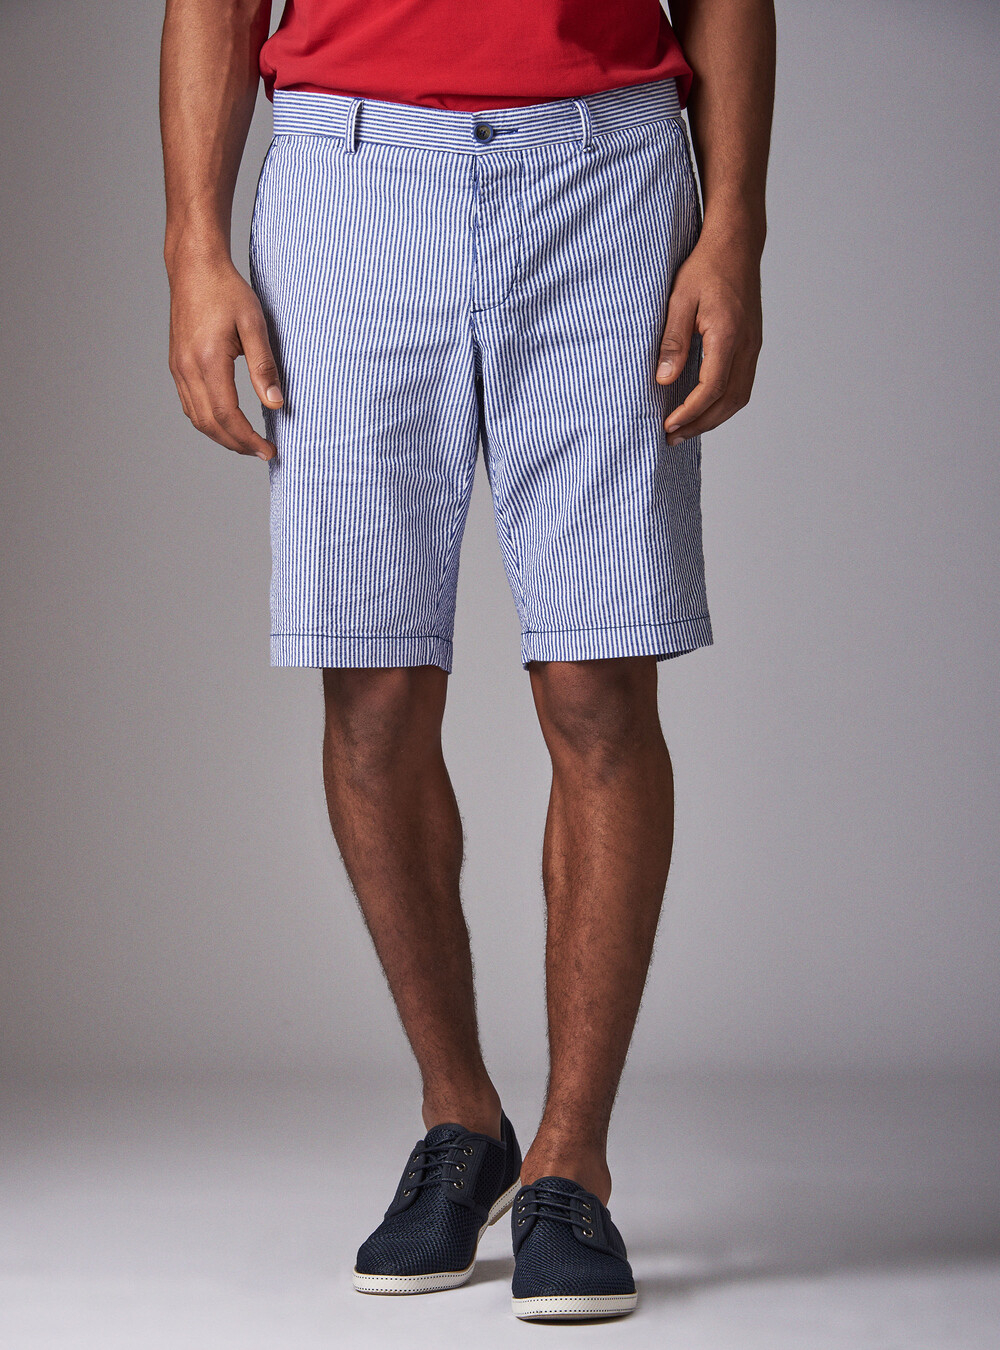 Bermudas en pantalones cortos a rayas.